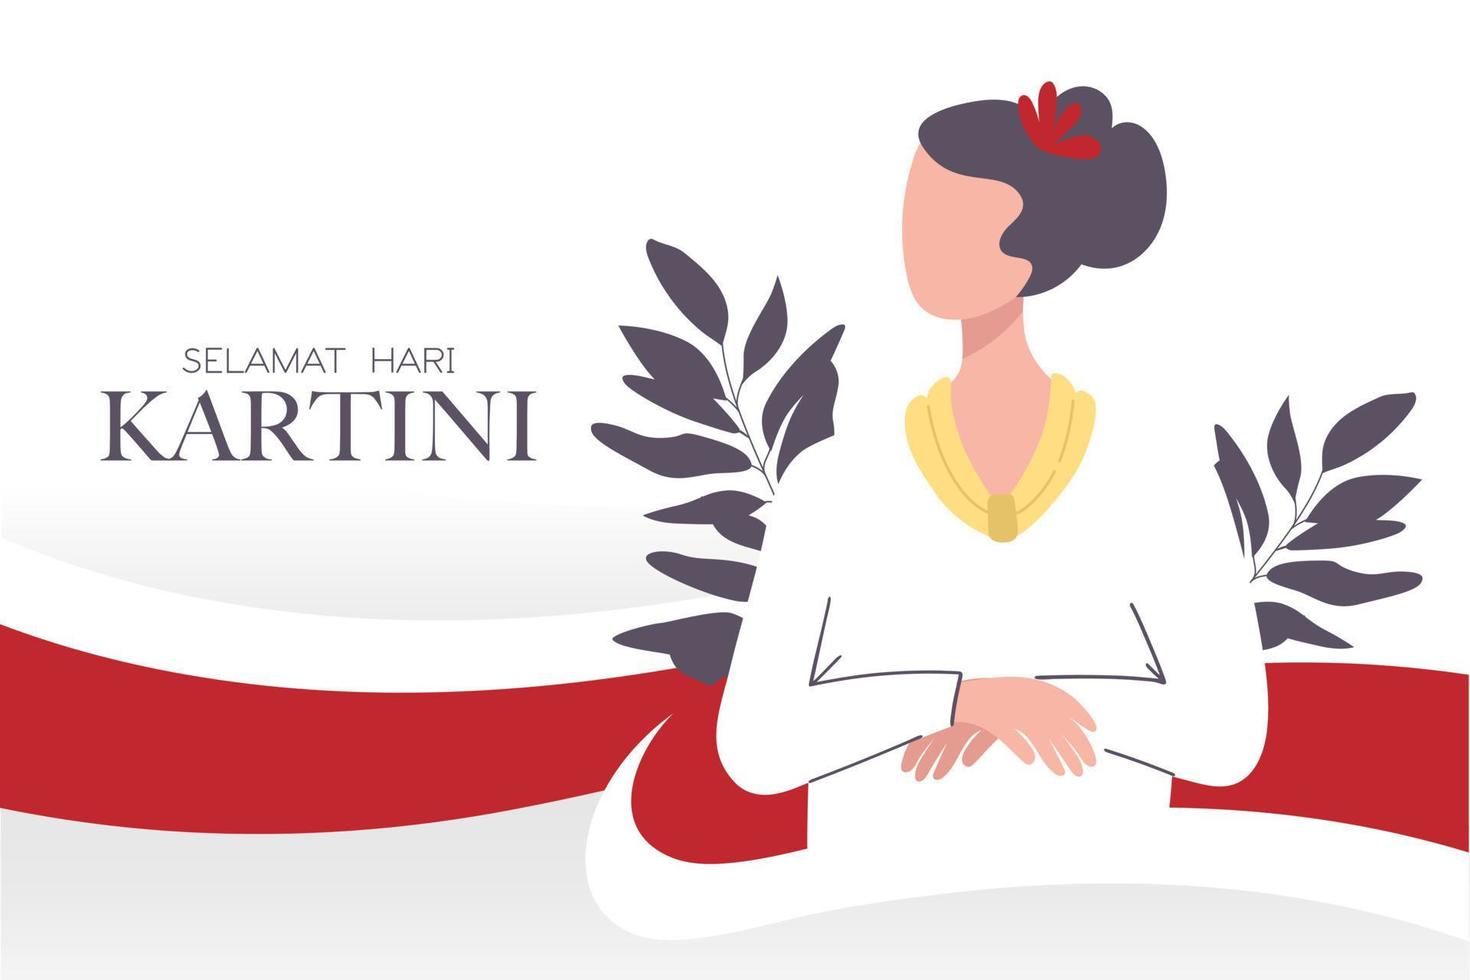 selamat hari kartini celebración feliz día de kartini. activista indonesia que abogó por los derechos de la mujer y la educación femenina. héroes del feminismo. vector